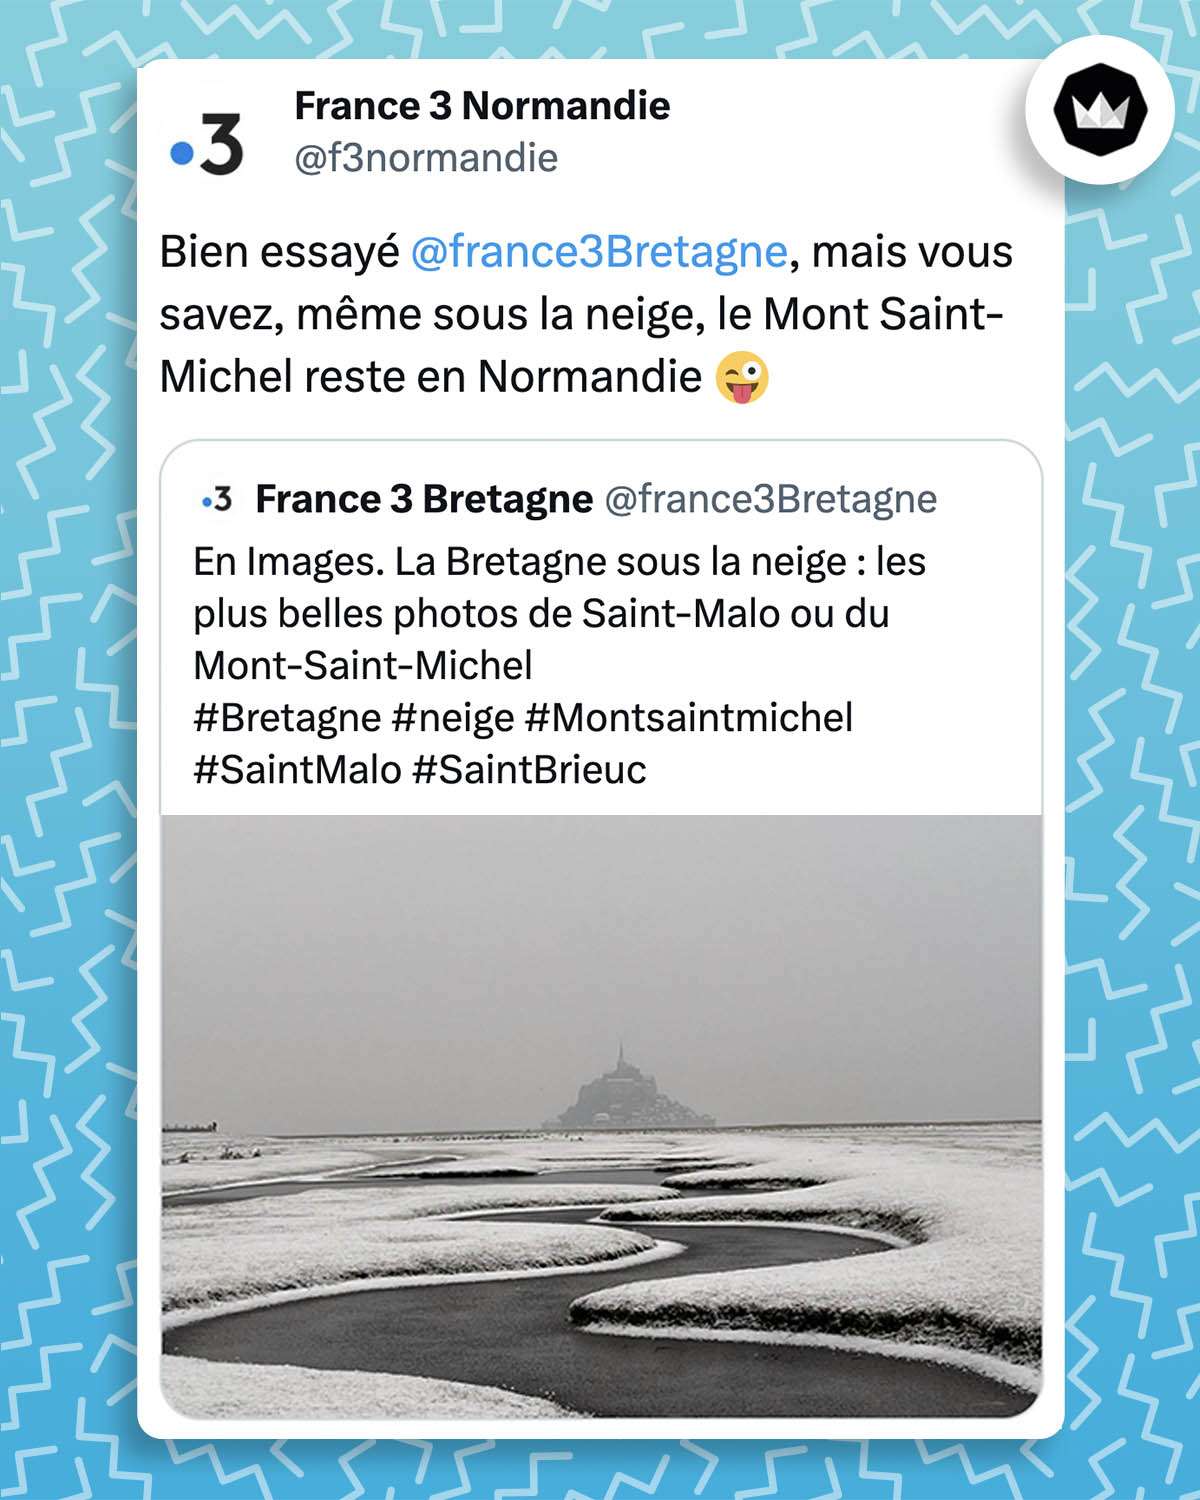 Tweet de France 3 Normandie : 
"Bien essayé @france3Bretagne, mais vous savez, même sous la neige, le Mont Saint-Michel reste en Normandie" avec un emoji clin d'oeil

Il s'agit d'une réponse à un tweet de France 3 Bretagne :
"En Images. La Bretagne sous la neige : les plus belles photos de Saint-Malo ou du Mont-Saint-Michel
#Bretagne #neige #Montsaintmichel #SaintMalo #SaintBrieuc" accompagnéen d'une photo du Mont Saint-Michel sous la neige.